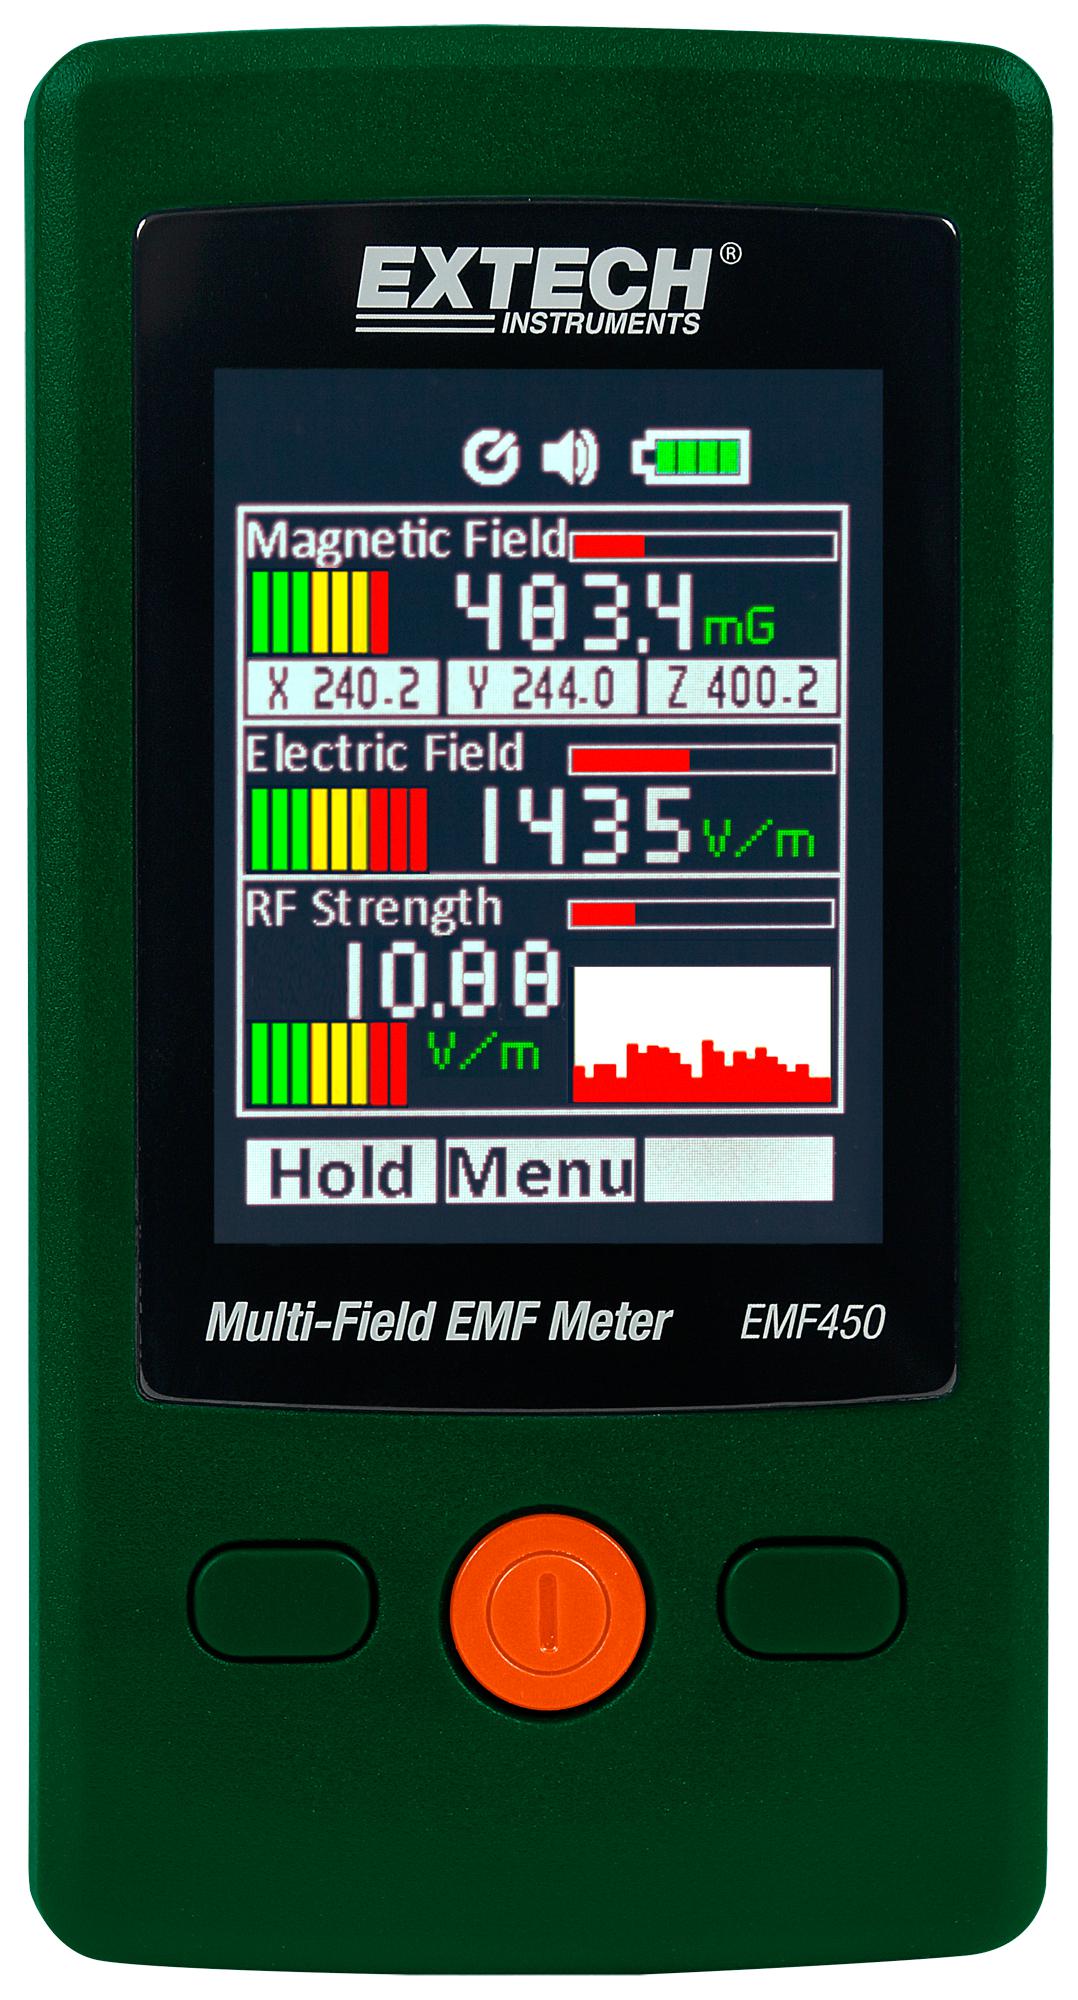 EMF450 MULTI-FIELD EMF METER, 50 - 2000V/M, 15% EXTECH INSTRUMENTS